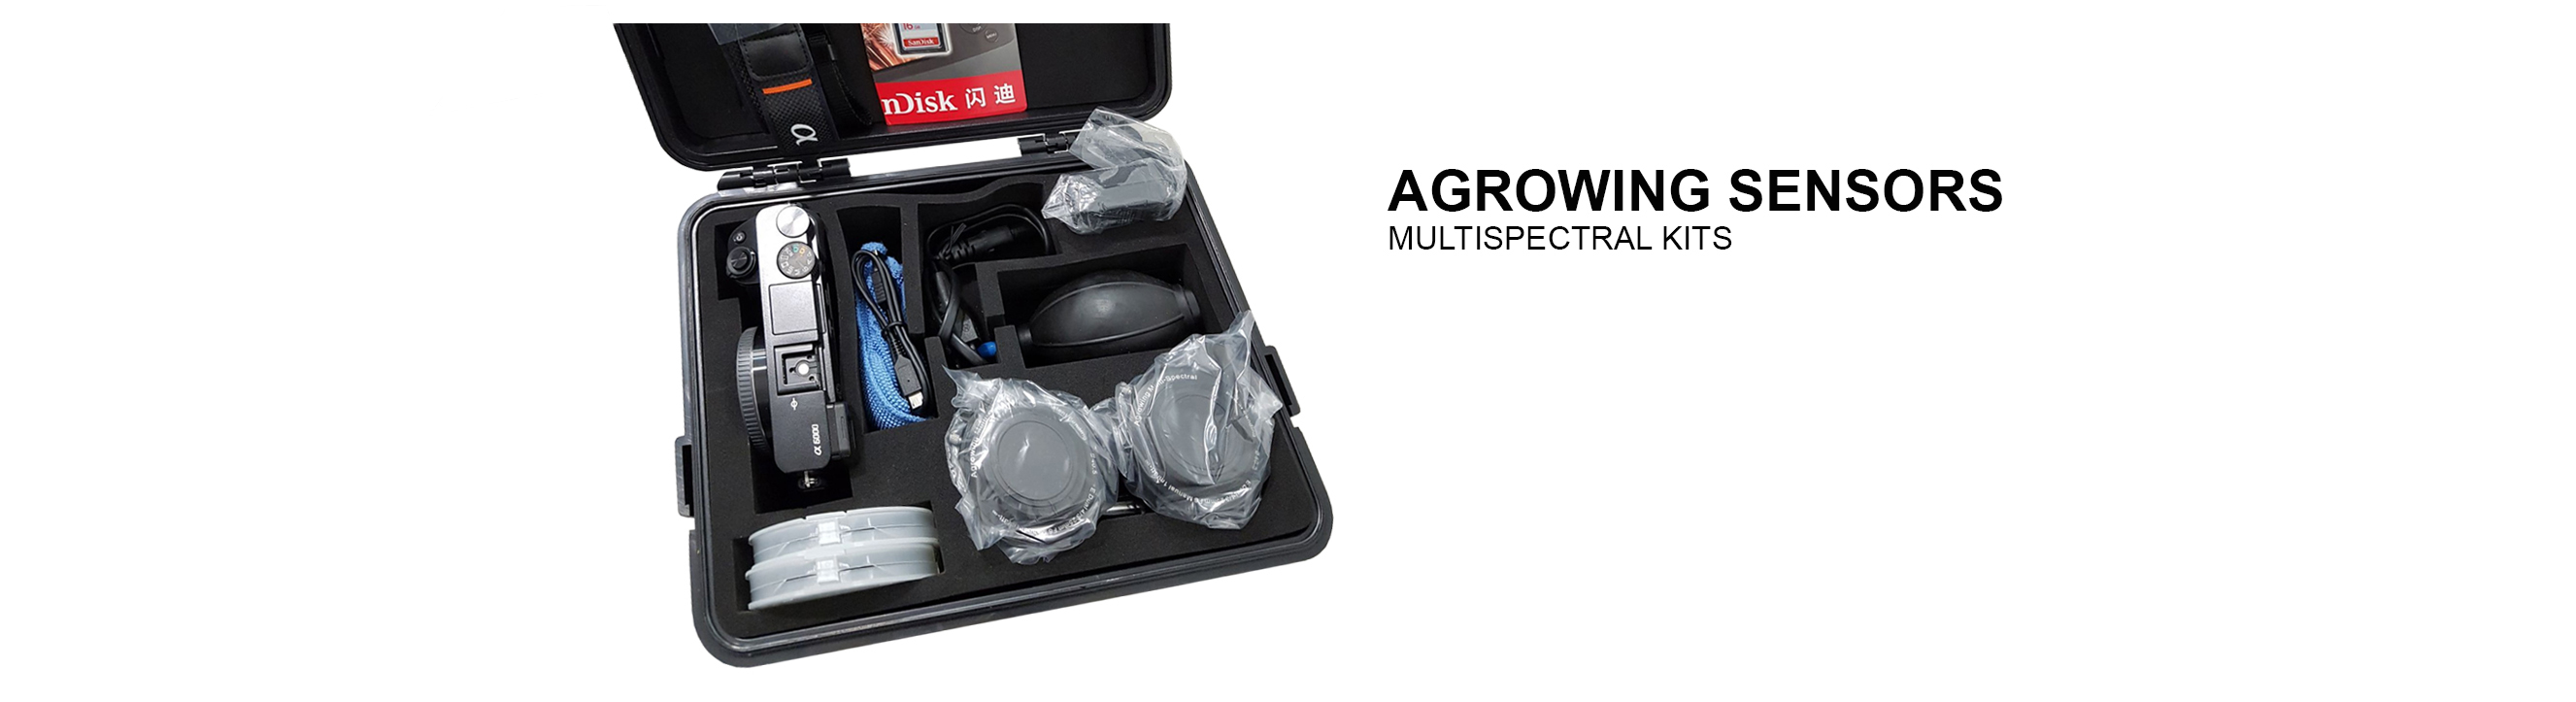 kit Agrowing